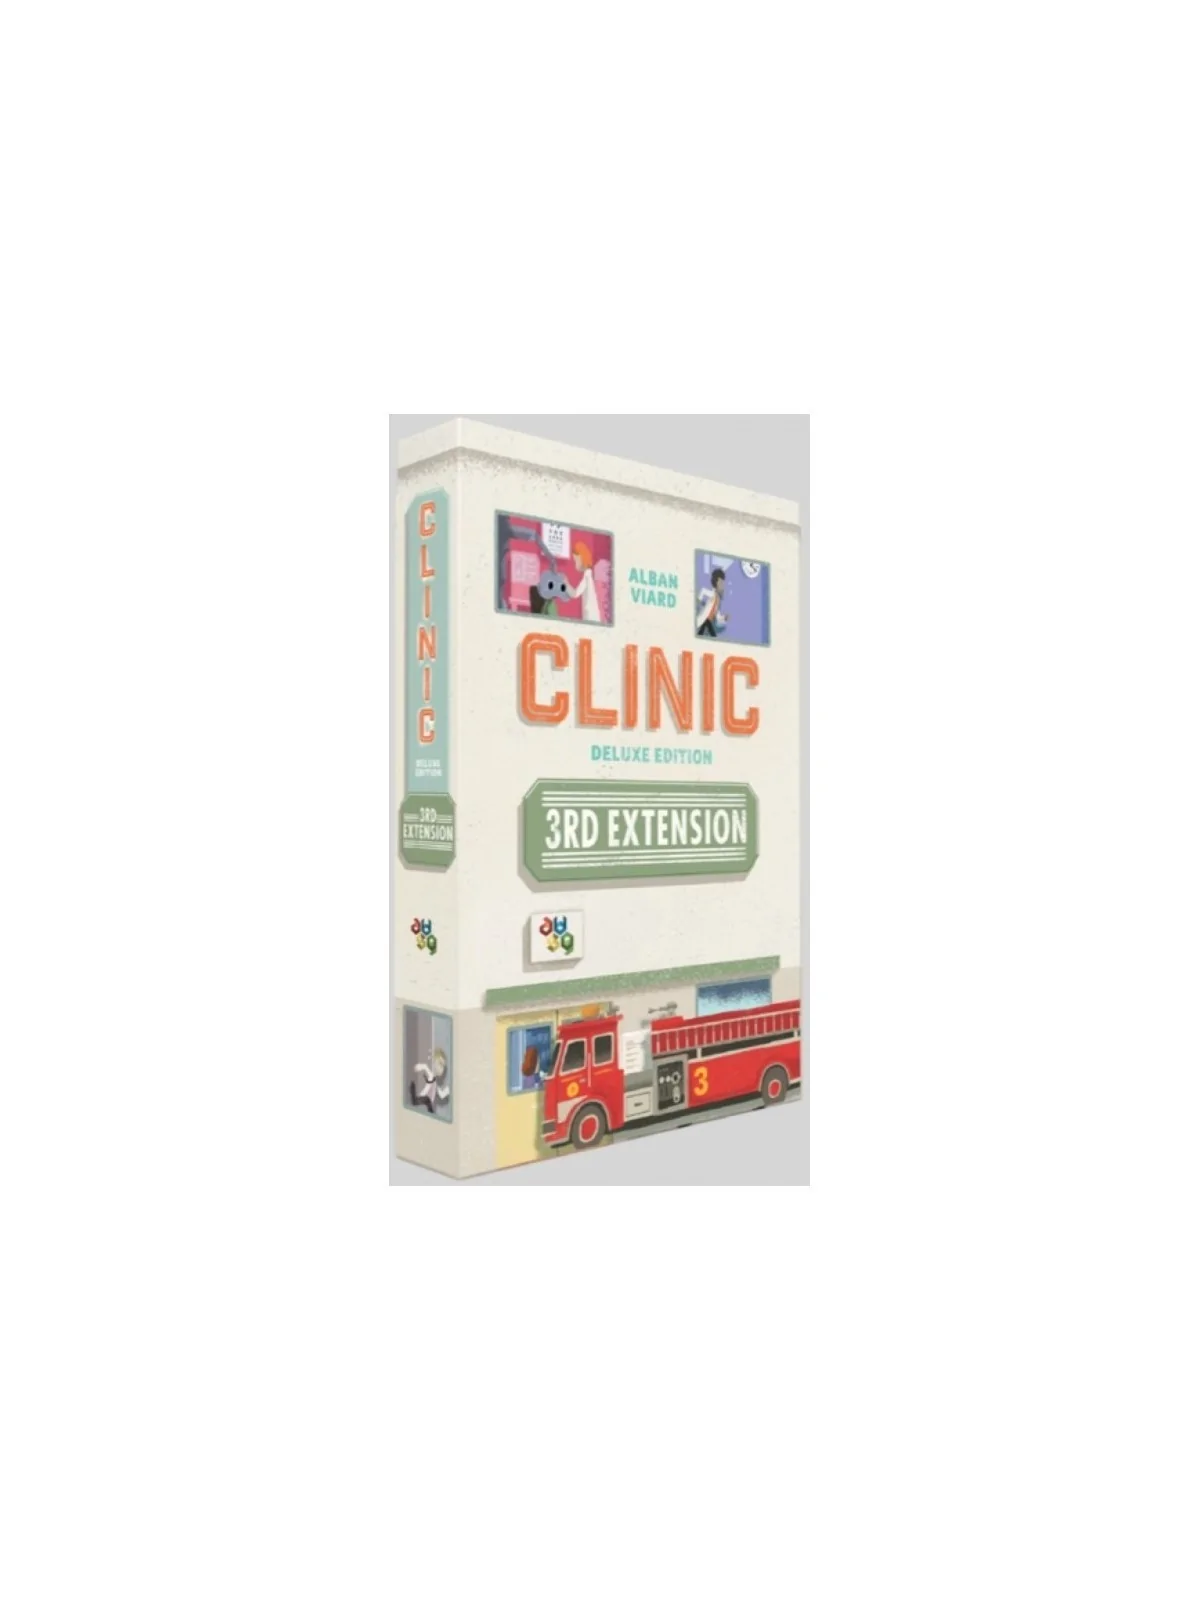 Comprar Clinic: Deluxe Edition – The Extension 3 barato al mejor preci